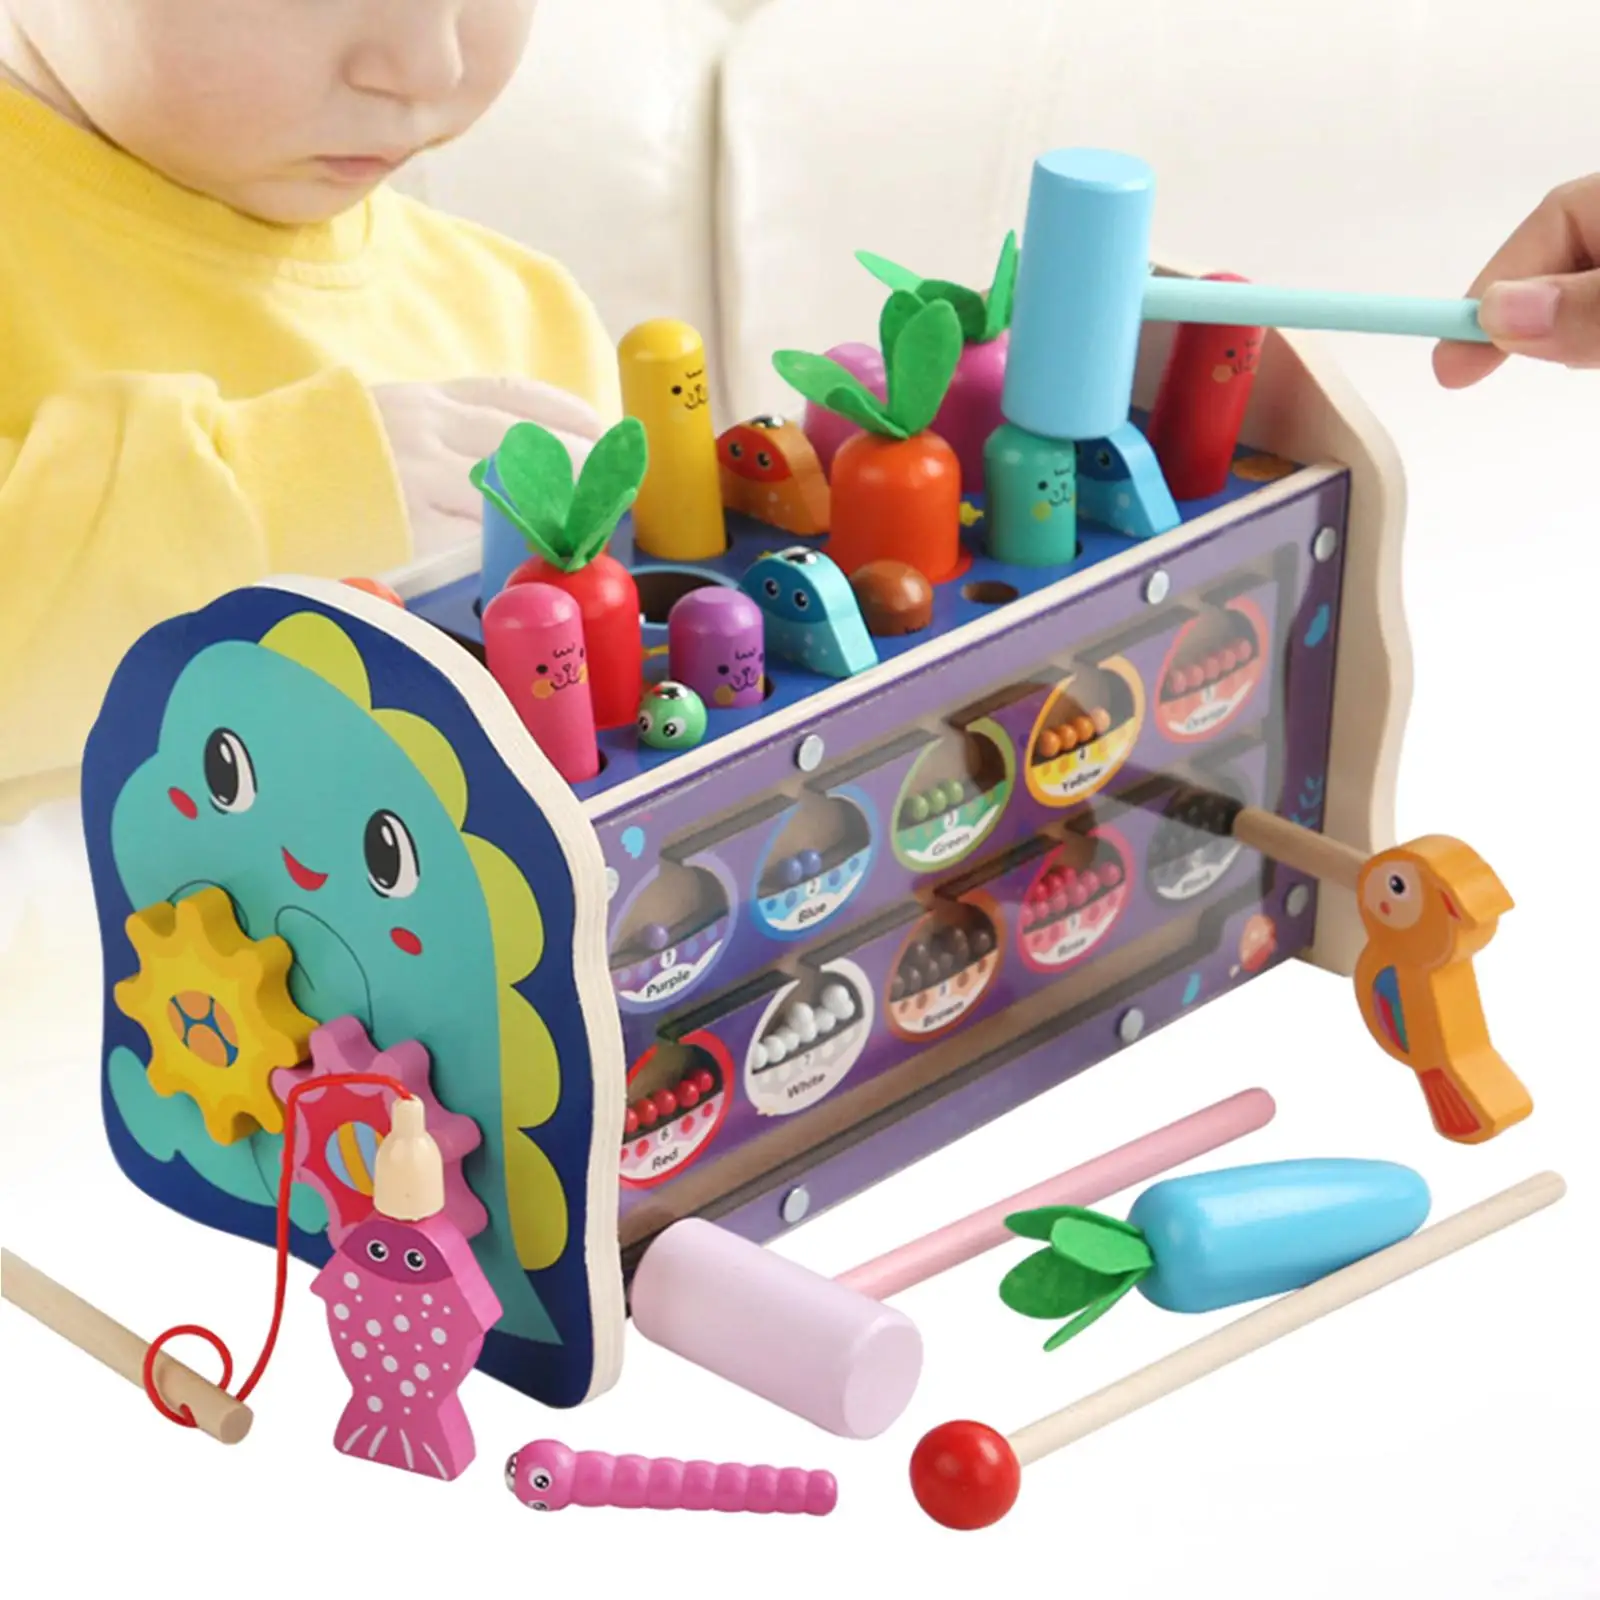 Banco de golpeo de madera Montessori para niños, juguete de habilidad motora fina, regalos de cumpleaños para niños de 1, 2, 3 y 4 años